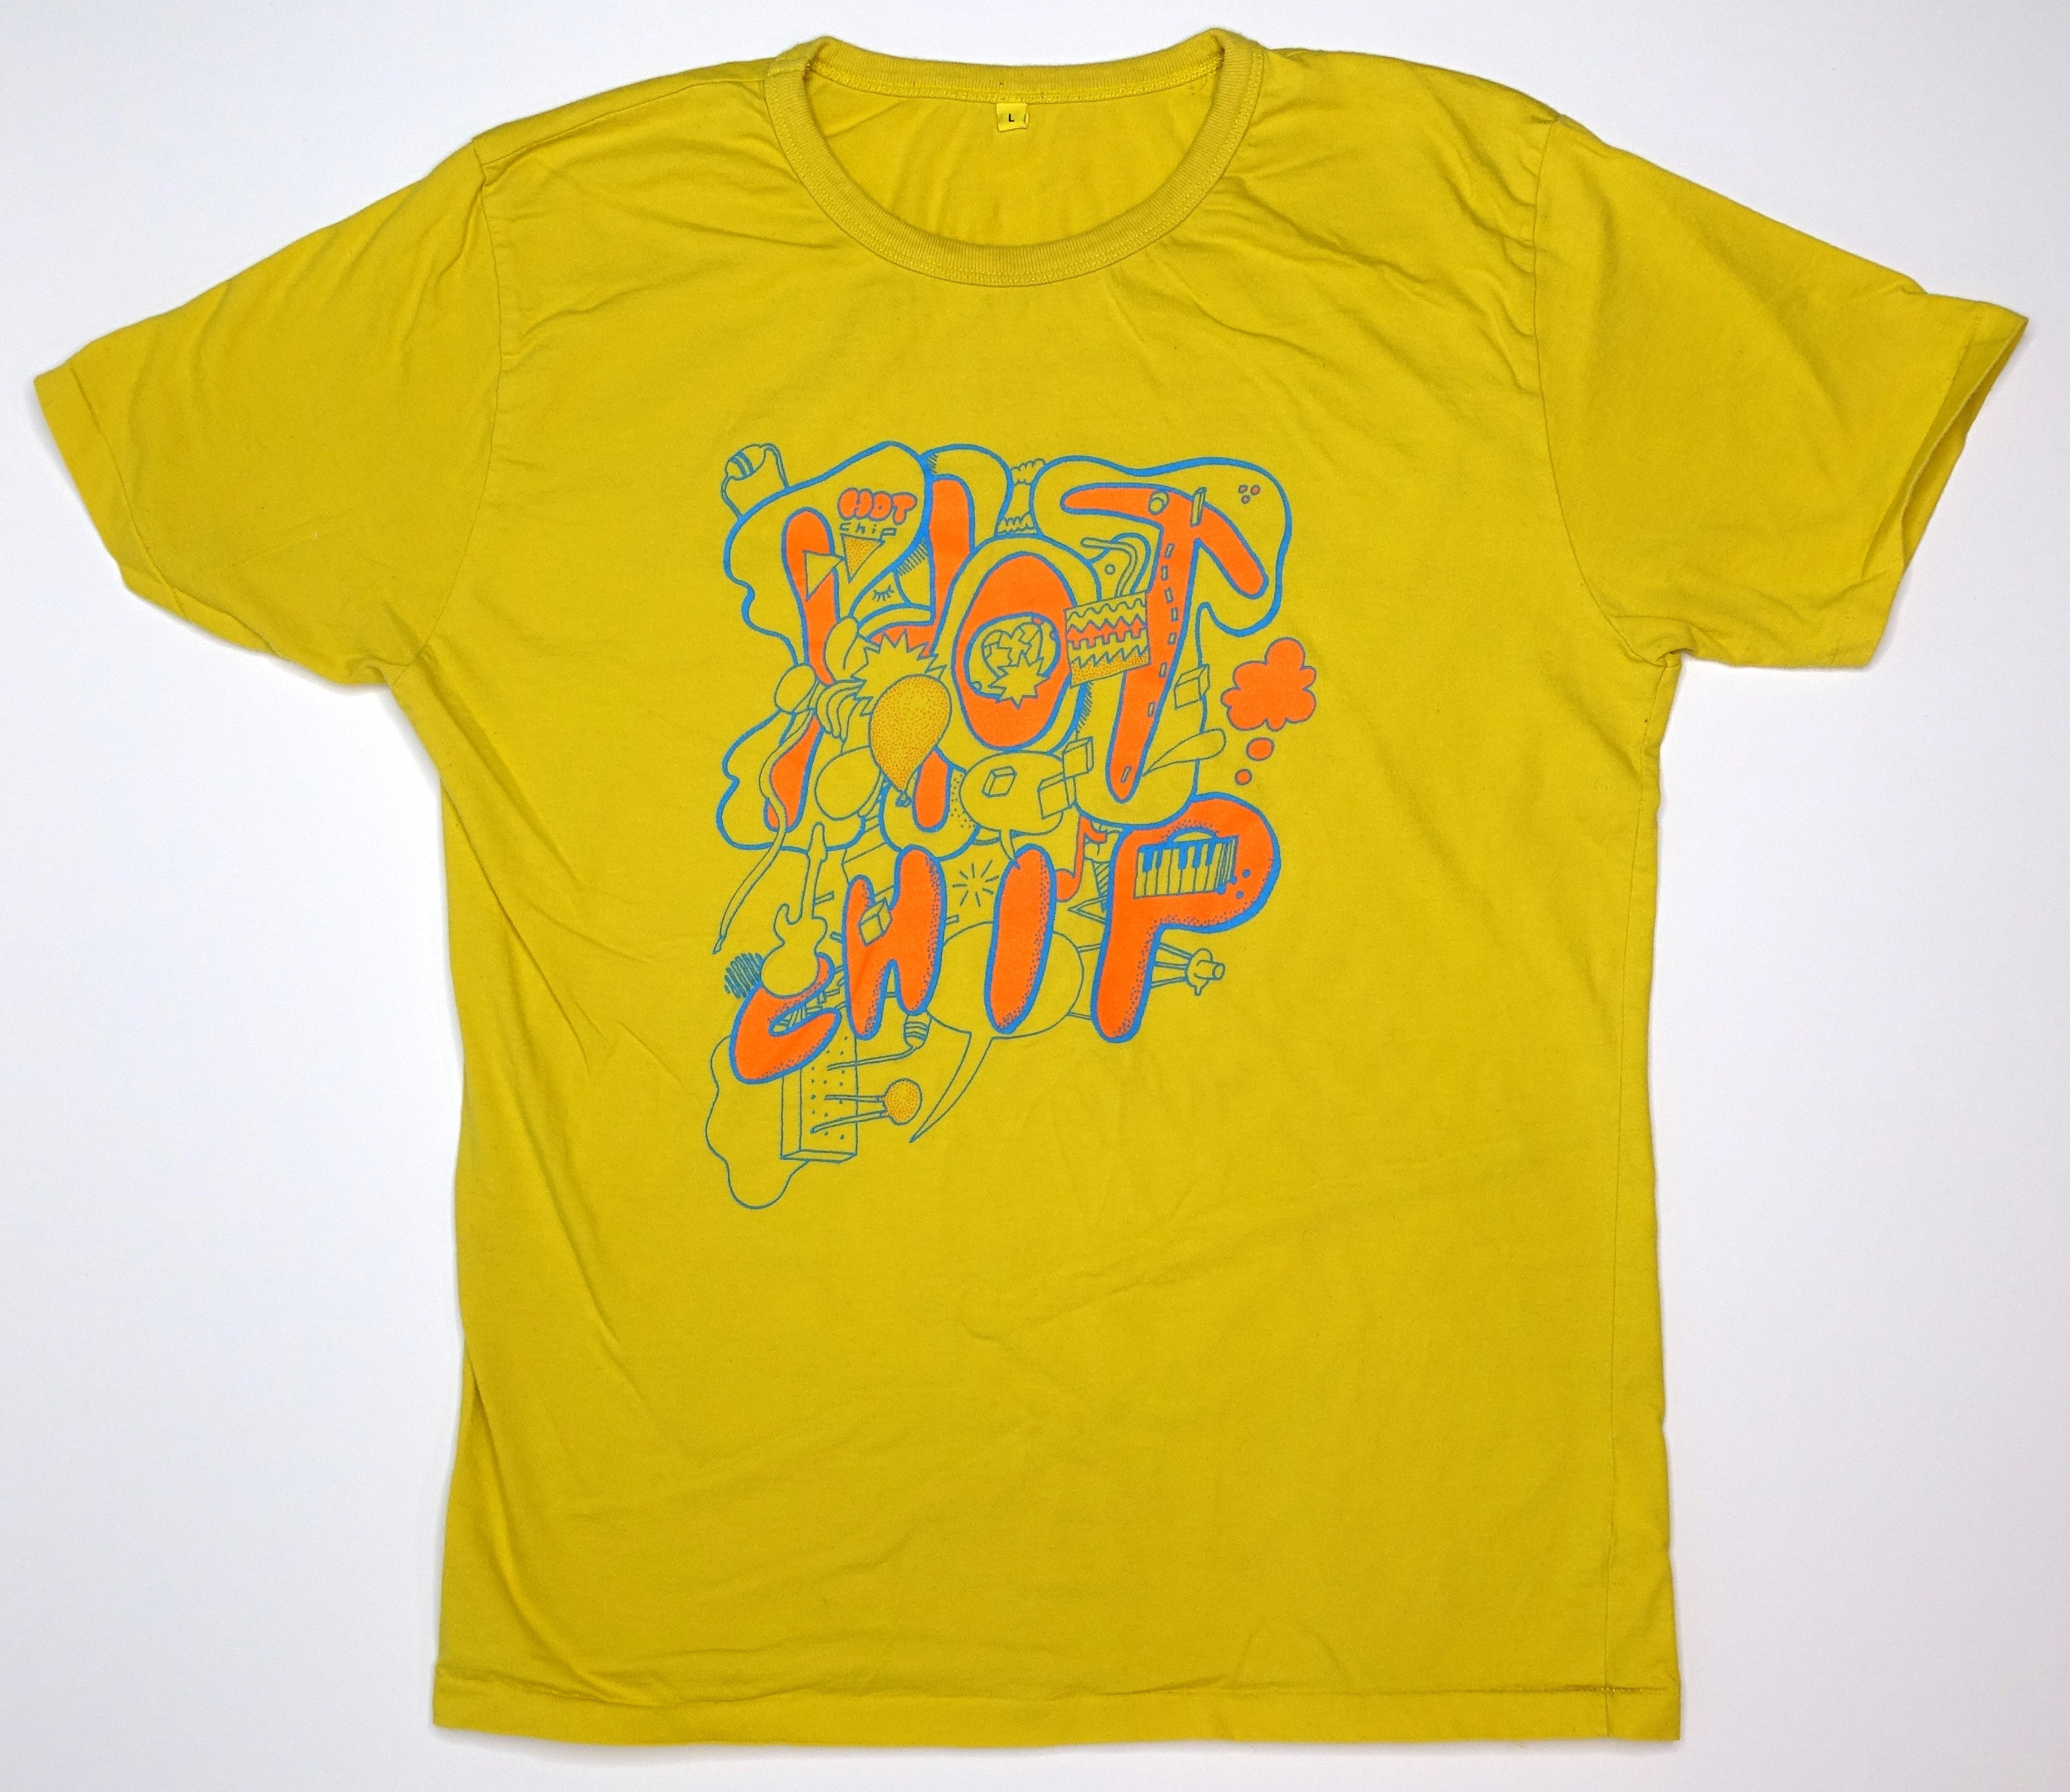 Hot Chip - Bubble Letters Tour Shirt Size Large